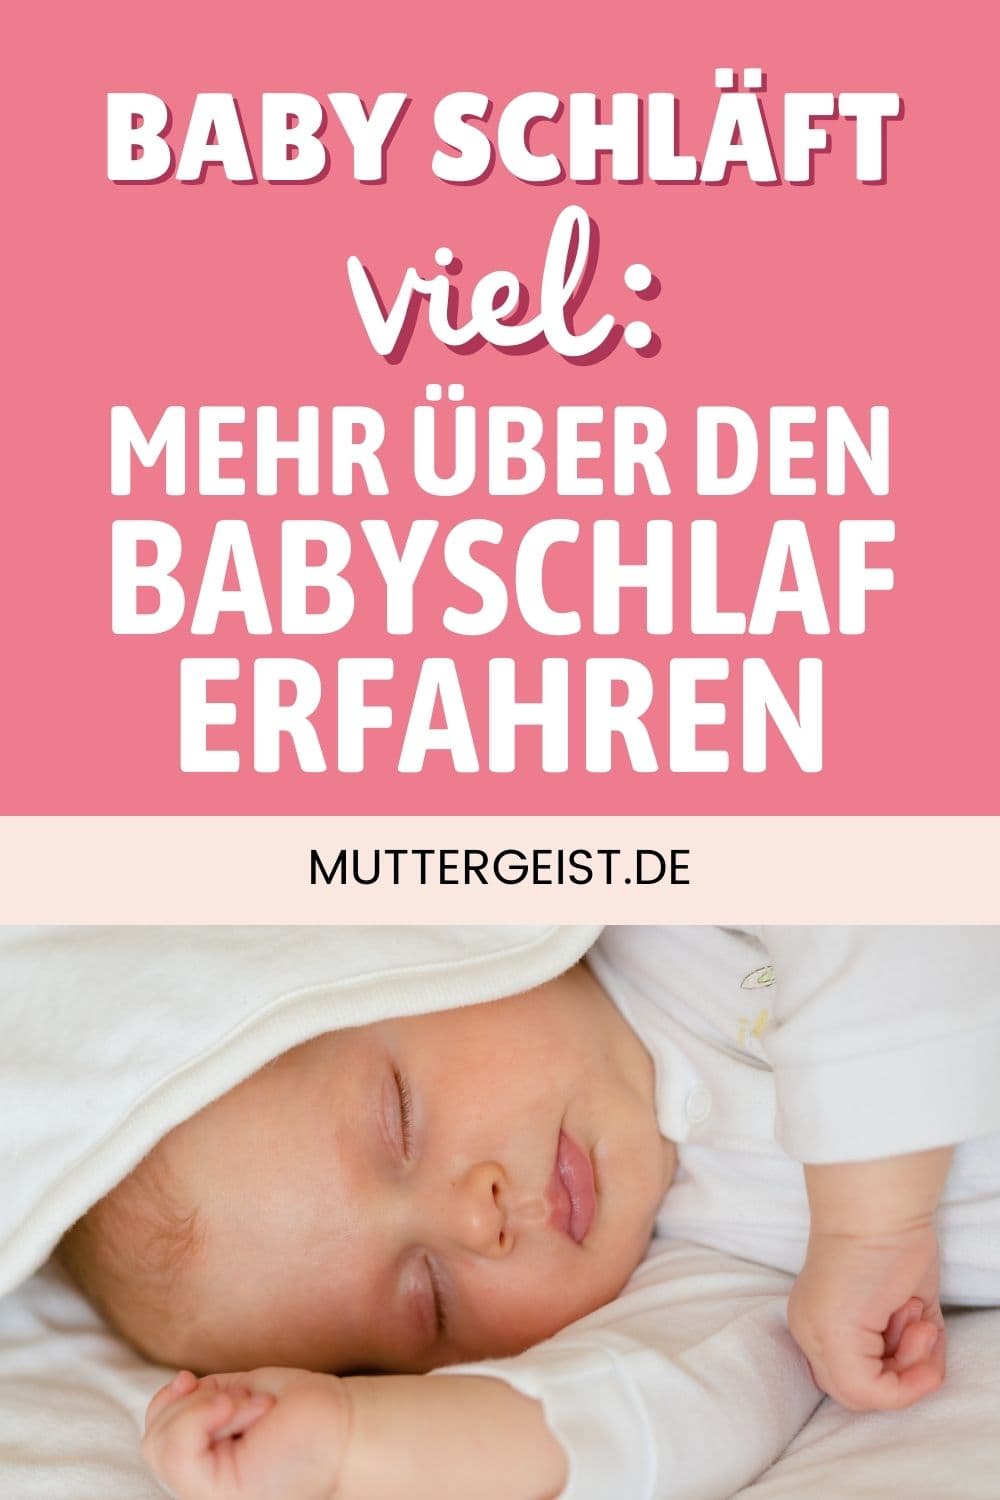 Baby schläft viel – Mehr über den Babyschlaf erfahren Pinterest